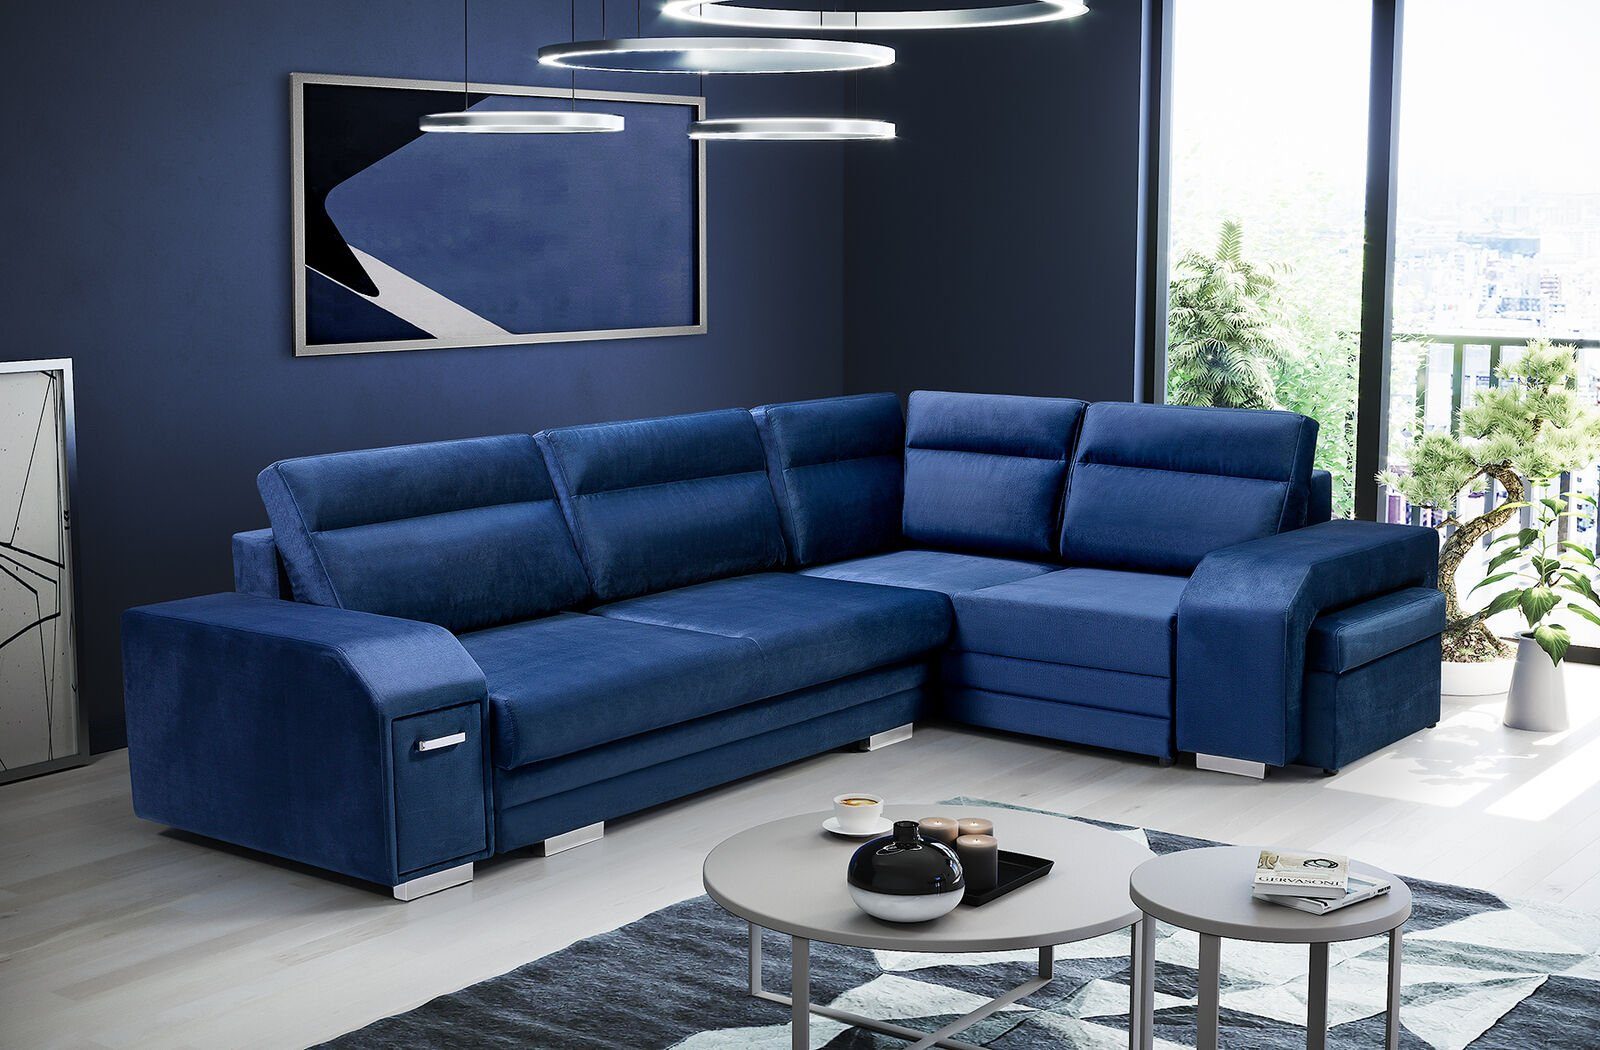 JVmoebel Ecksofa, Ecksofa Polster Eck Sofa Wohnzimmer Wohnlandschaft Couch Couch Blau